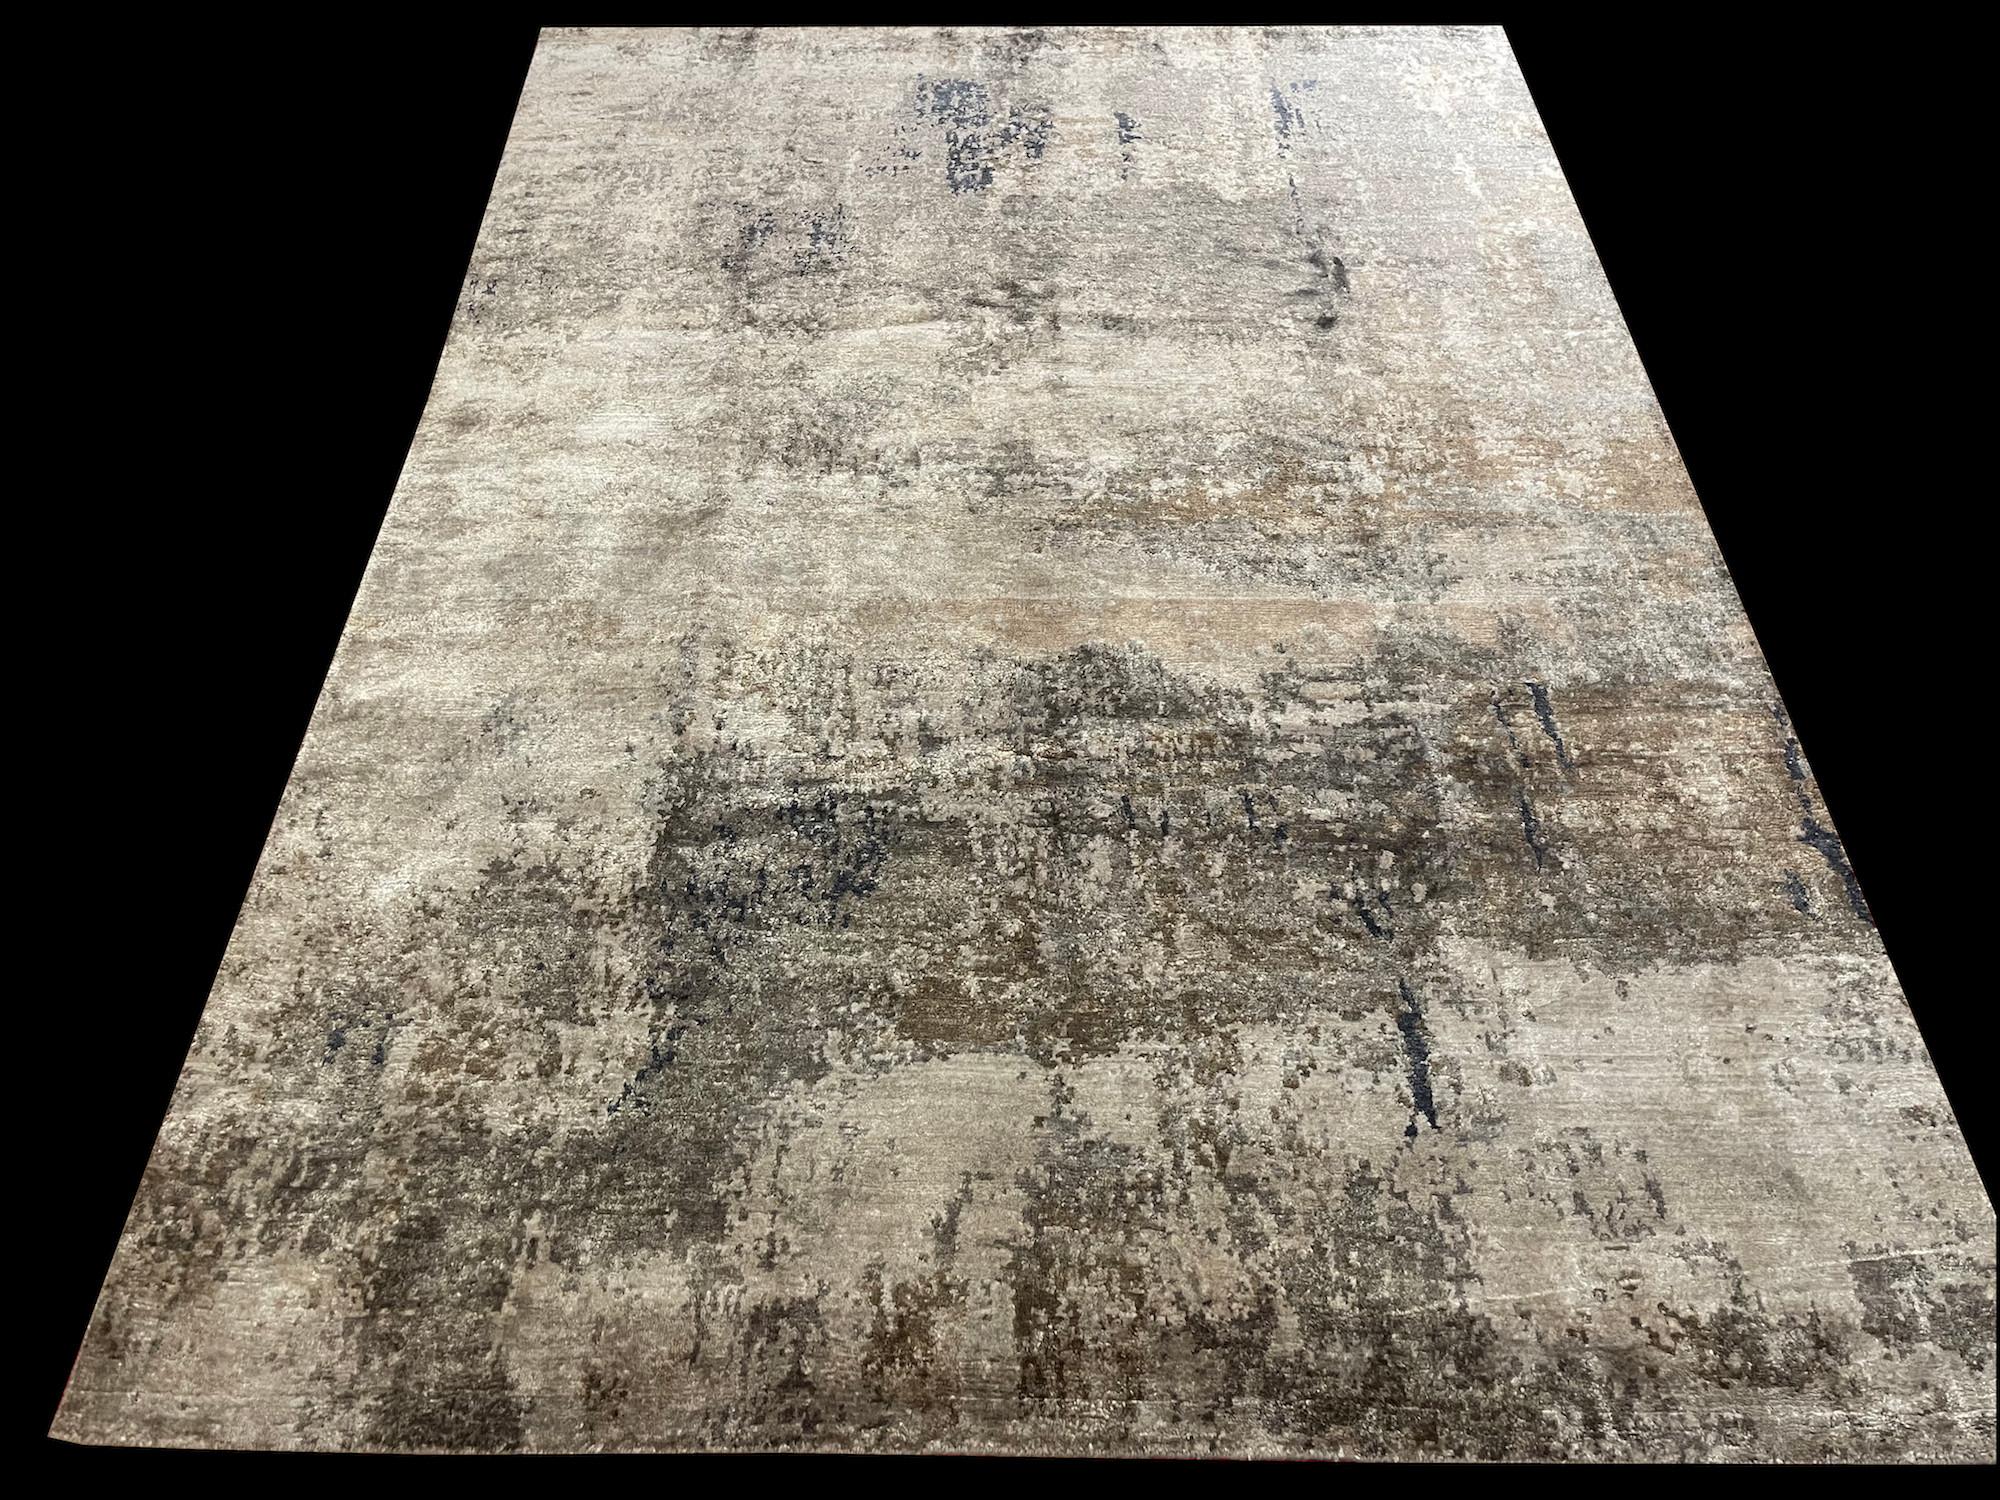 Dieser abstrakte Design Teppich hat die Nr.: JAY 8 und ist aus unserer Master-Loom Kollektion. Das Format ist 170cm x 240cm, handgeknüpft und besteht aus einer einzigartigen  Mischung aus hochwertiger Wolle und Bambus-Seide, deren natürlicher Glanz